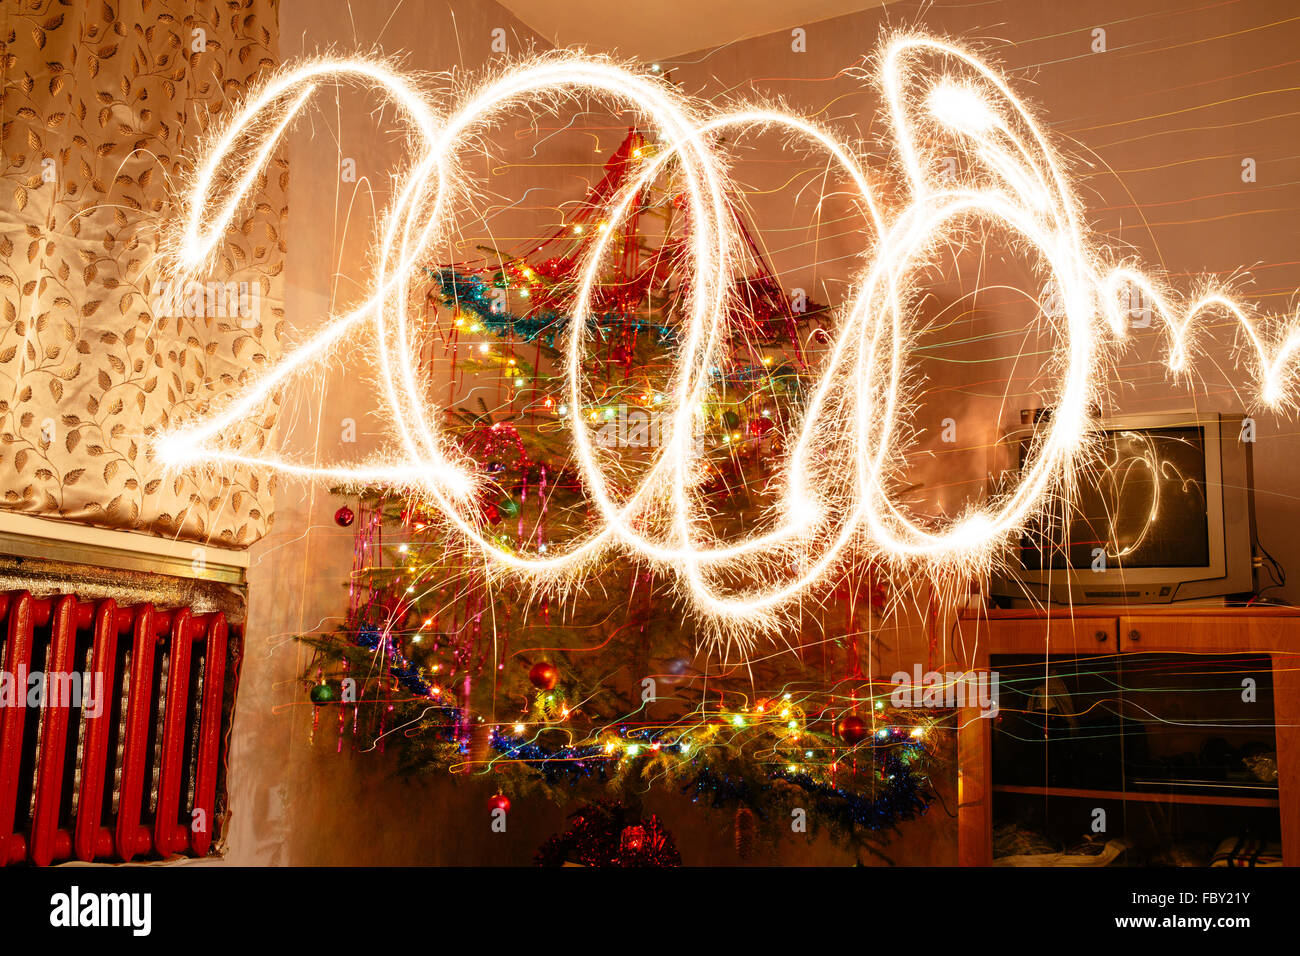 Foto von einem Weihnachtsbaum mit Verzögerung und Wirkung von bengalischen Lichtern. Stockfoto